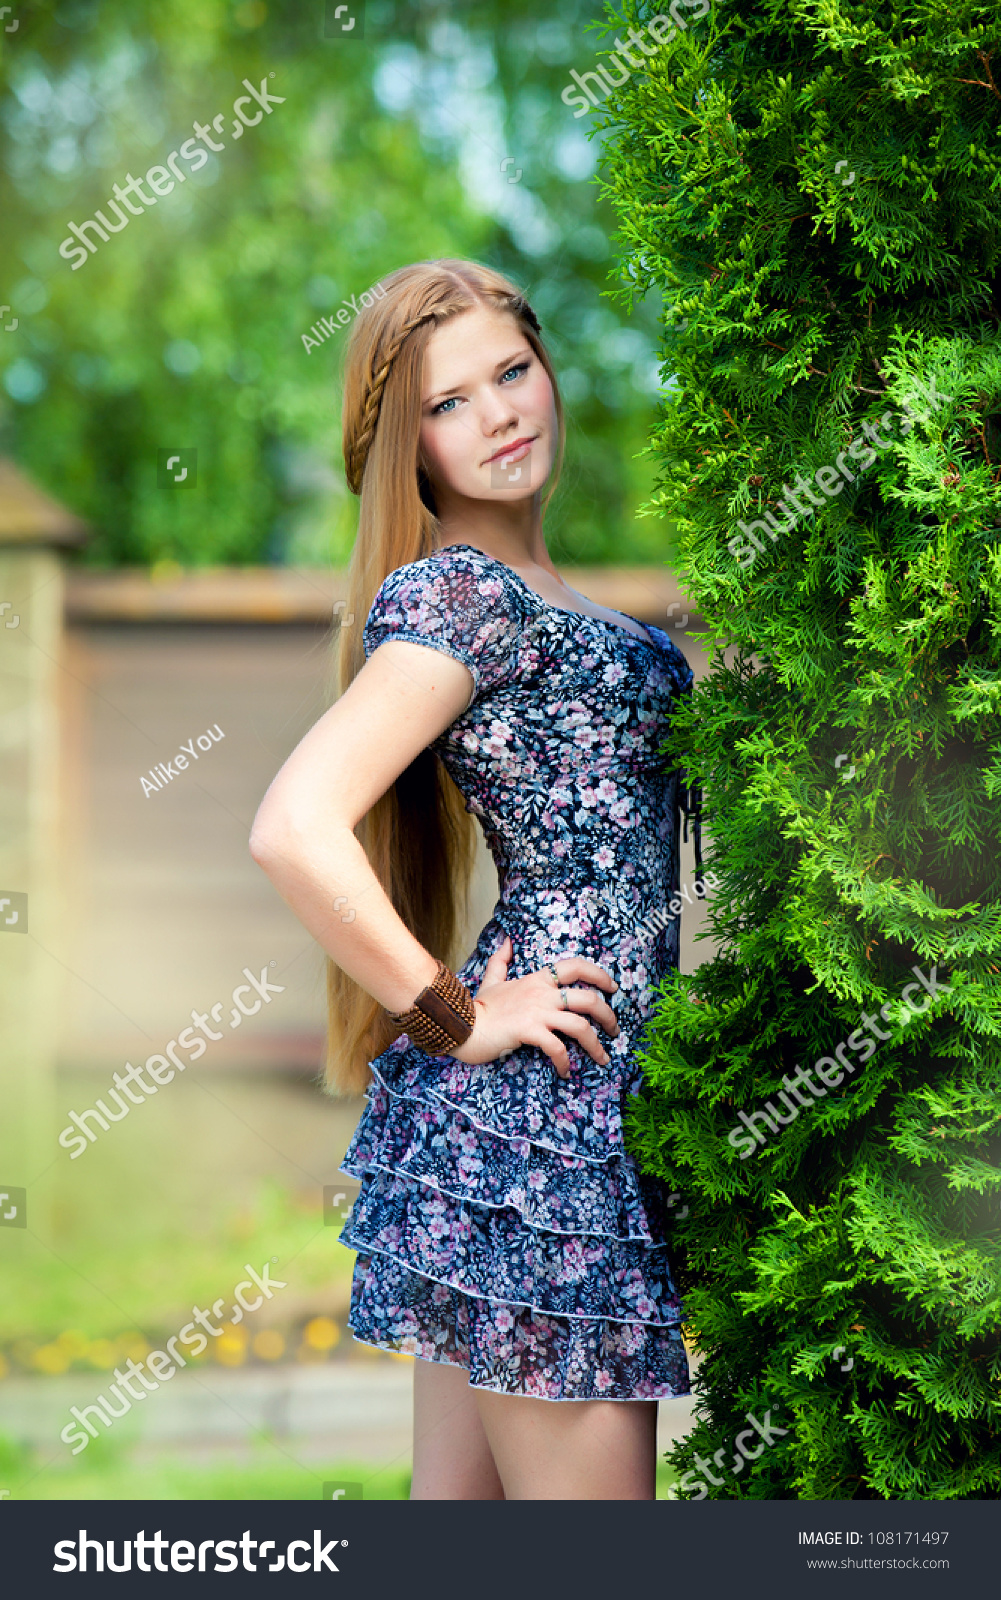 nice dress for teenager